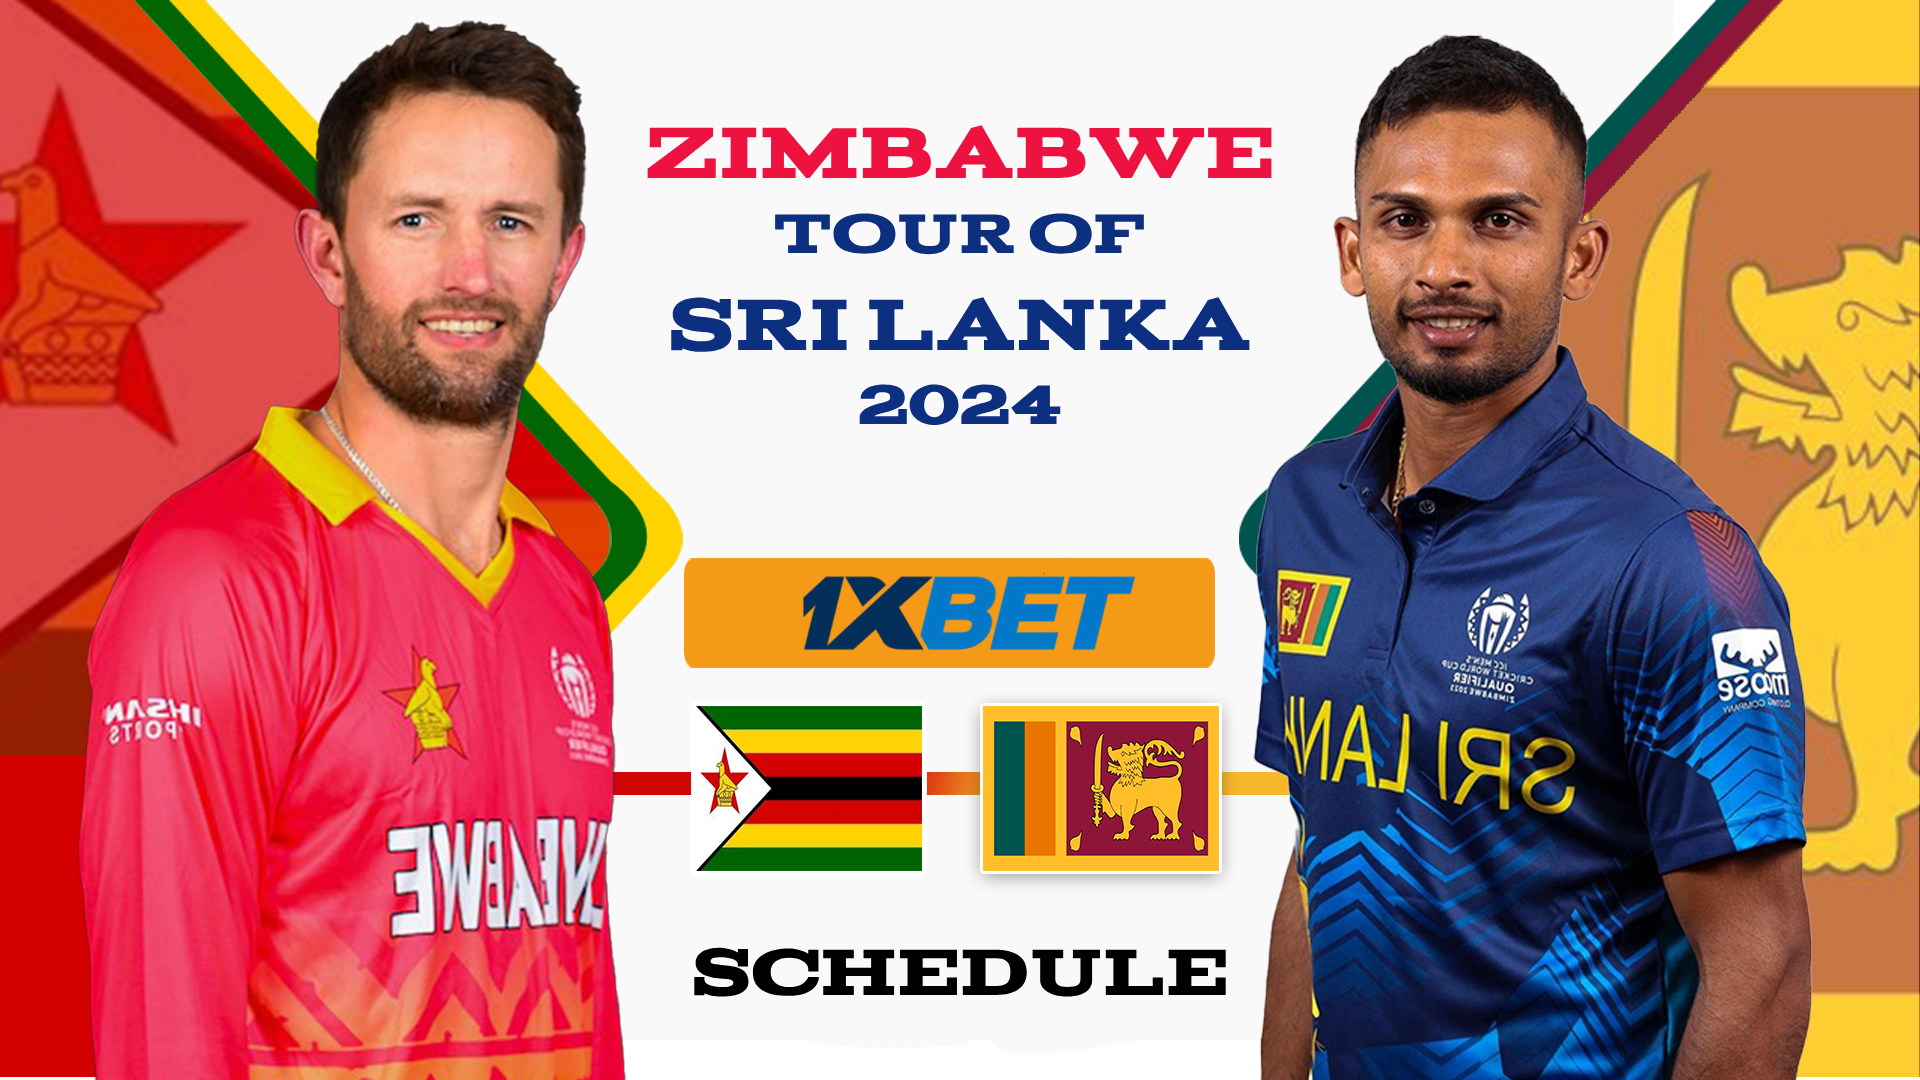 ශ්‍රී ලංකා -සිම්බාබ්වේ තරග කාලසටහන නිකුත් වෙයි-Sri Lanka-Zimbabwe match schedule is released සිම්බාබ්වේ කණ්ඩායමේ ශ්‍රී ලංකා සංචාරය 2024